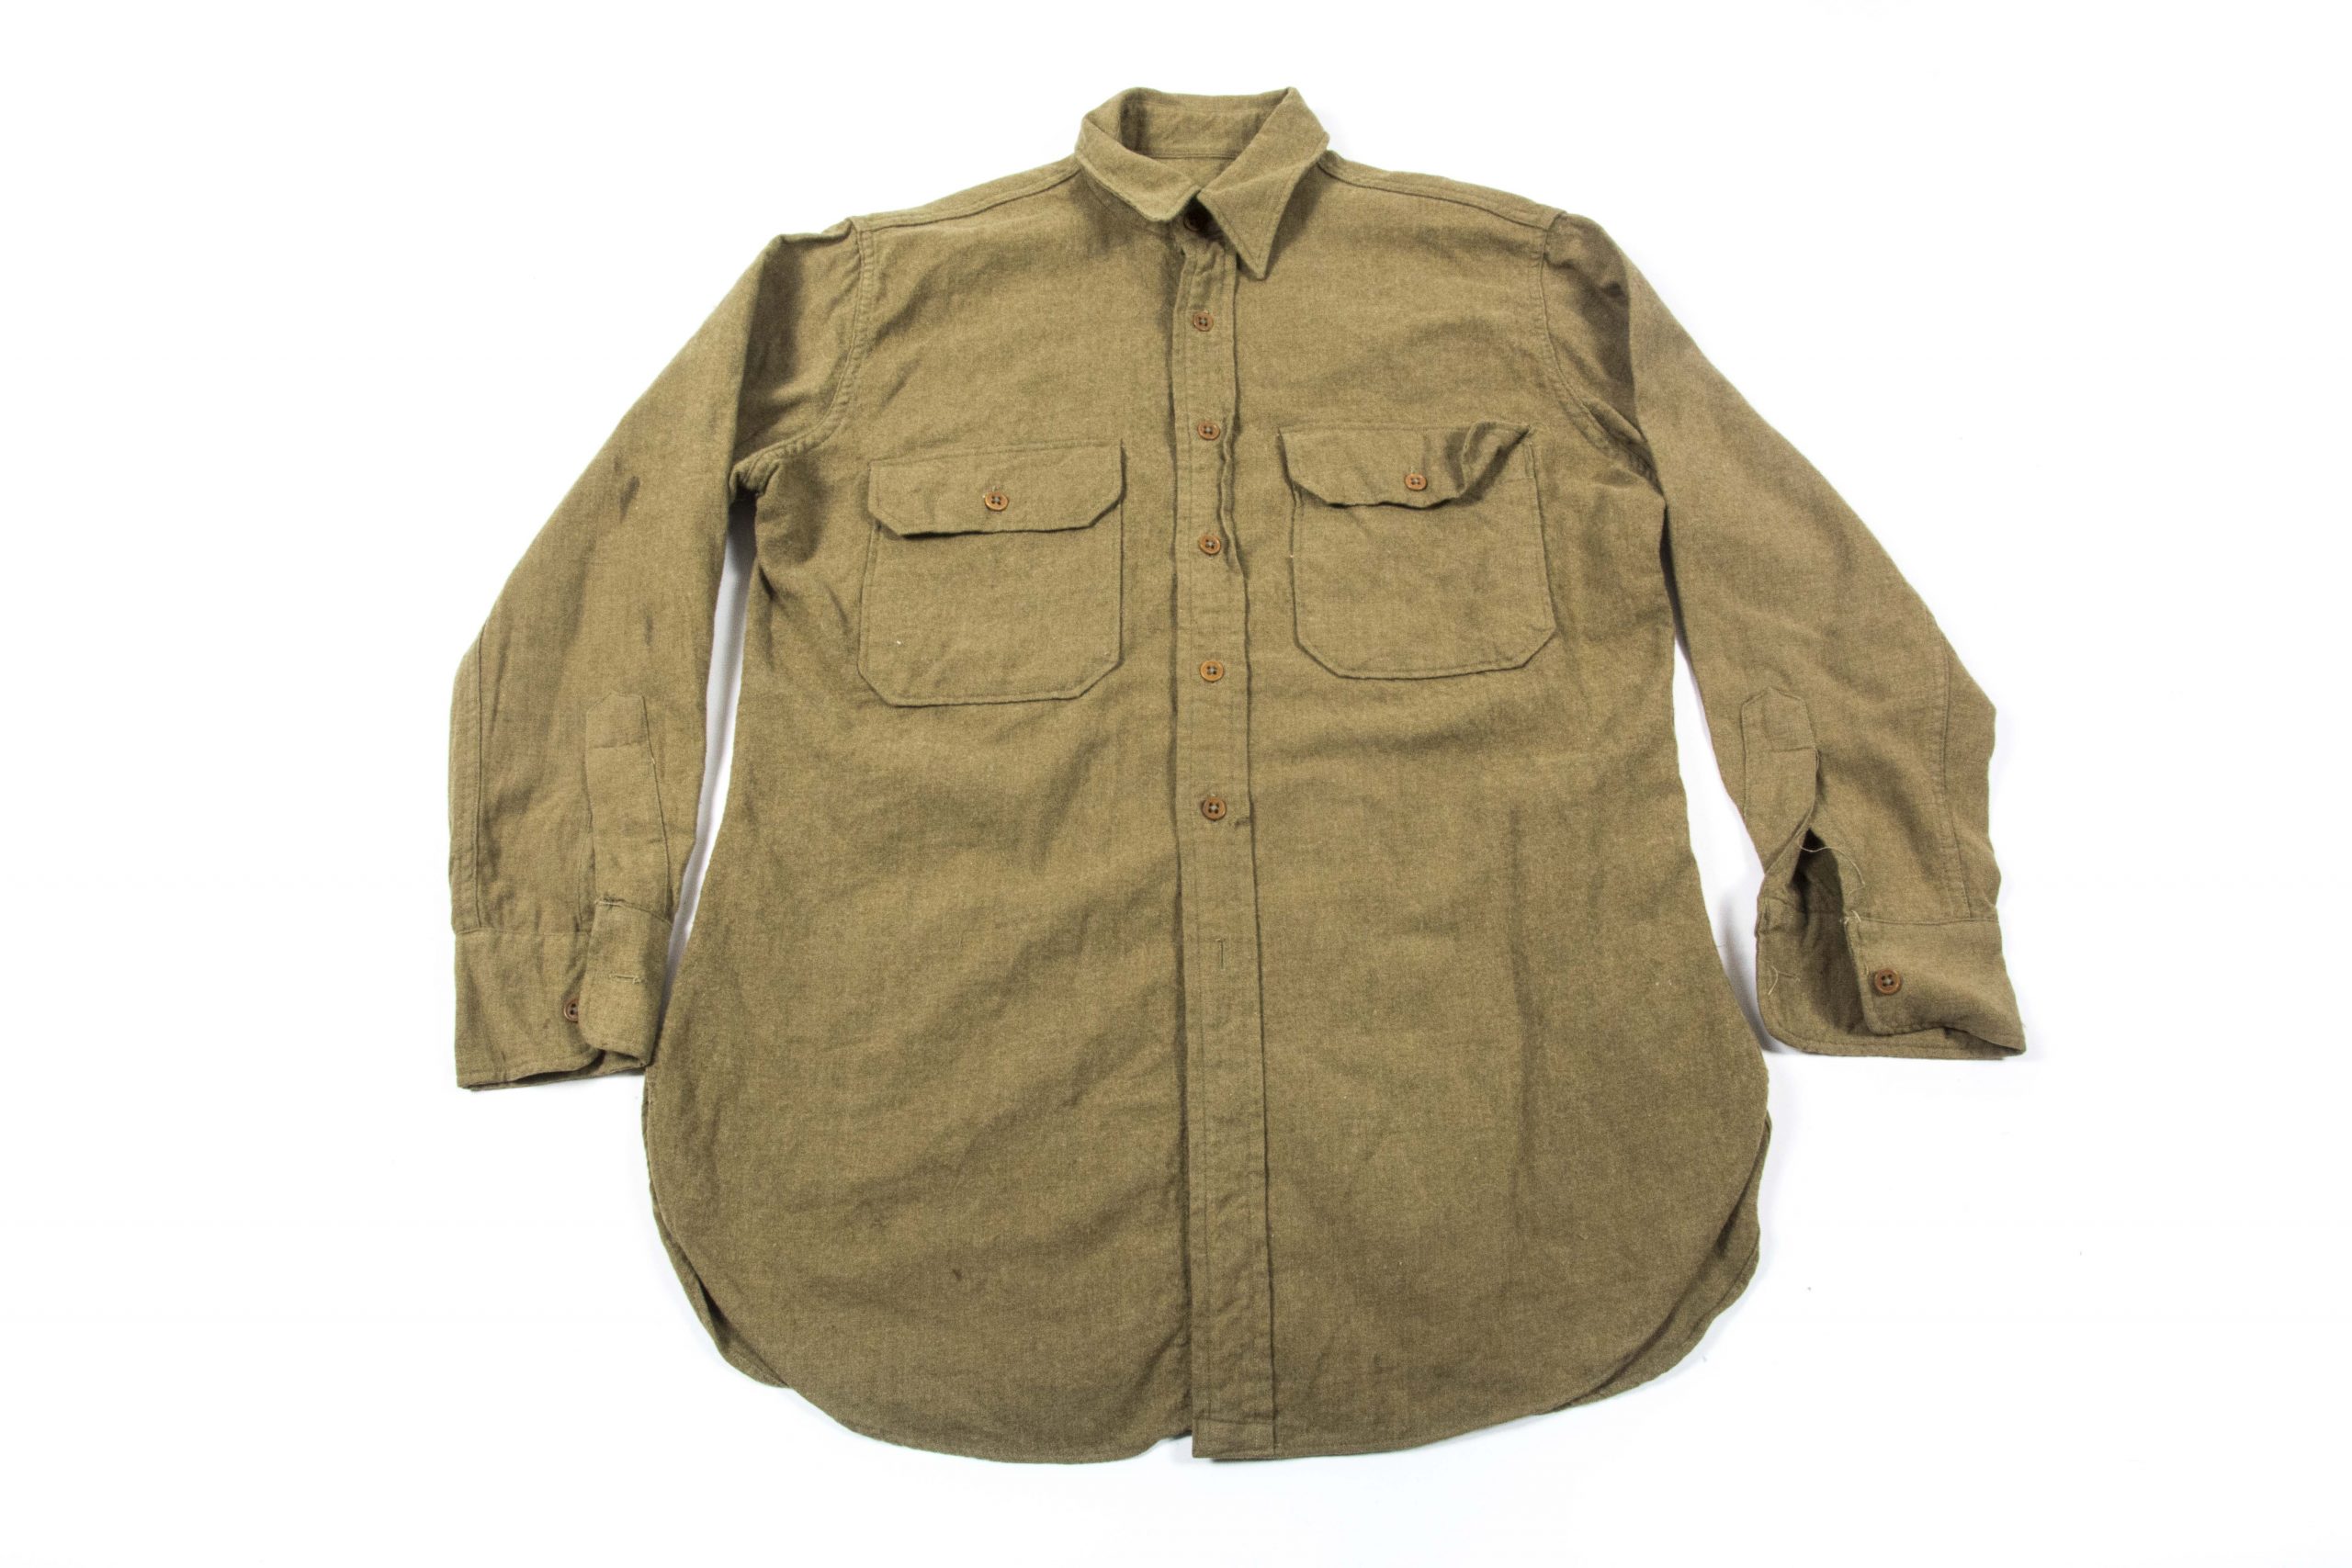 US Army shirt size 15 1/2 – 32 – fjm44